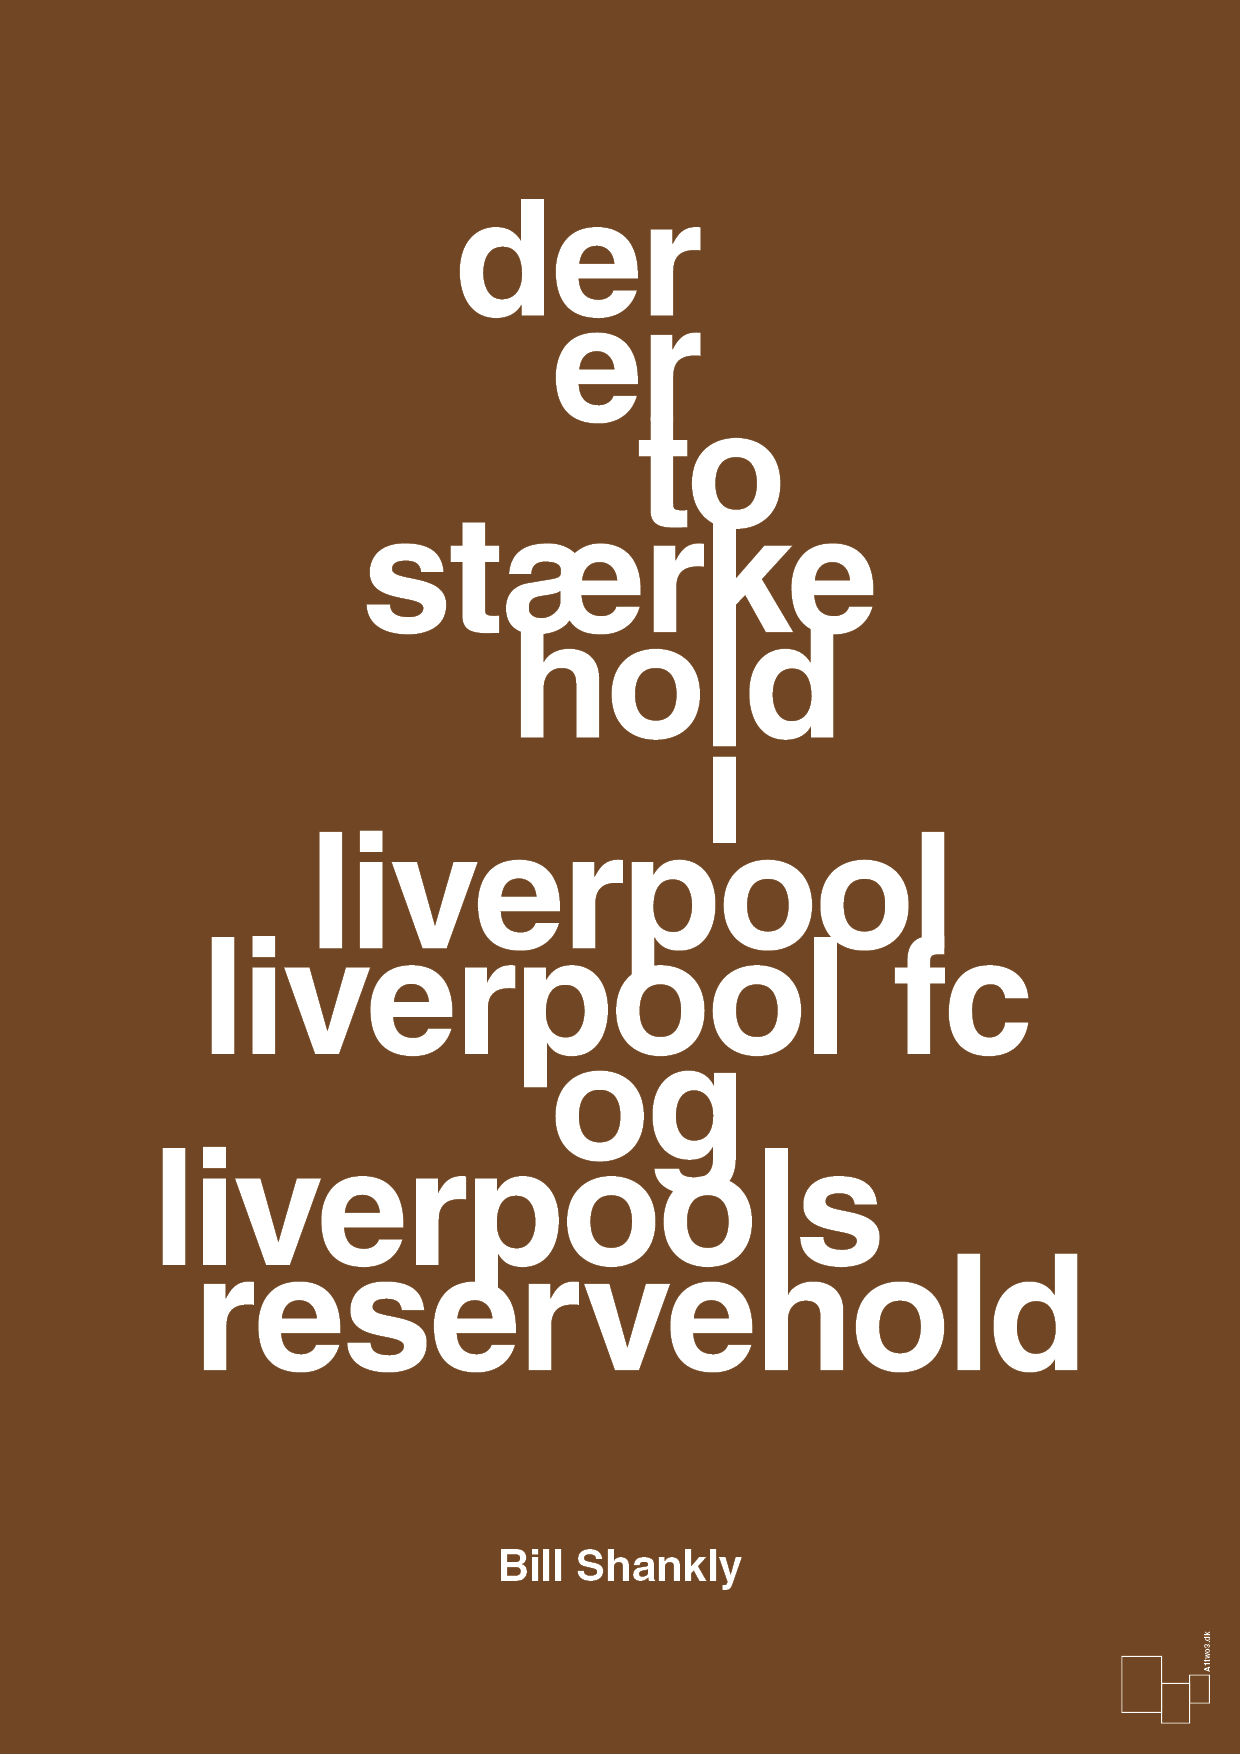 der er to stærke hold i liverpool liverpool fc og liverpools reservehold - Plakat med Citater i Dark Brown